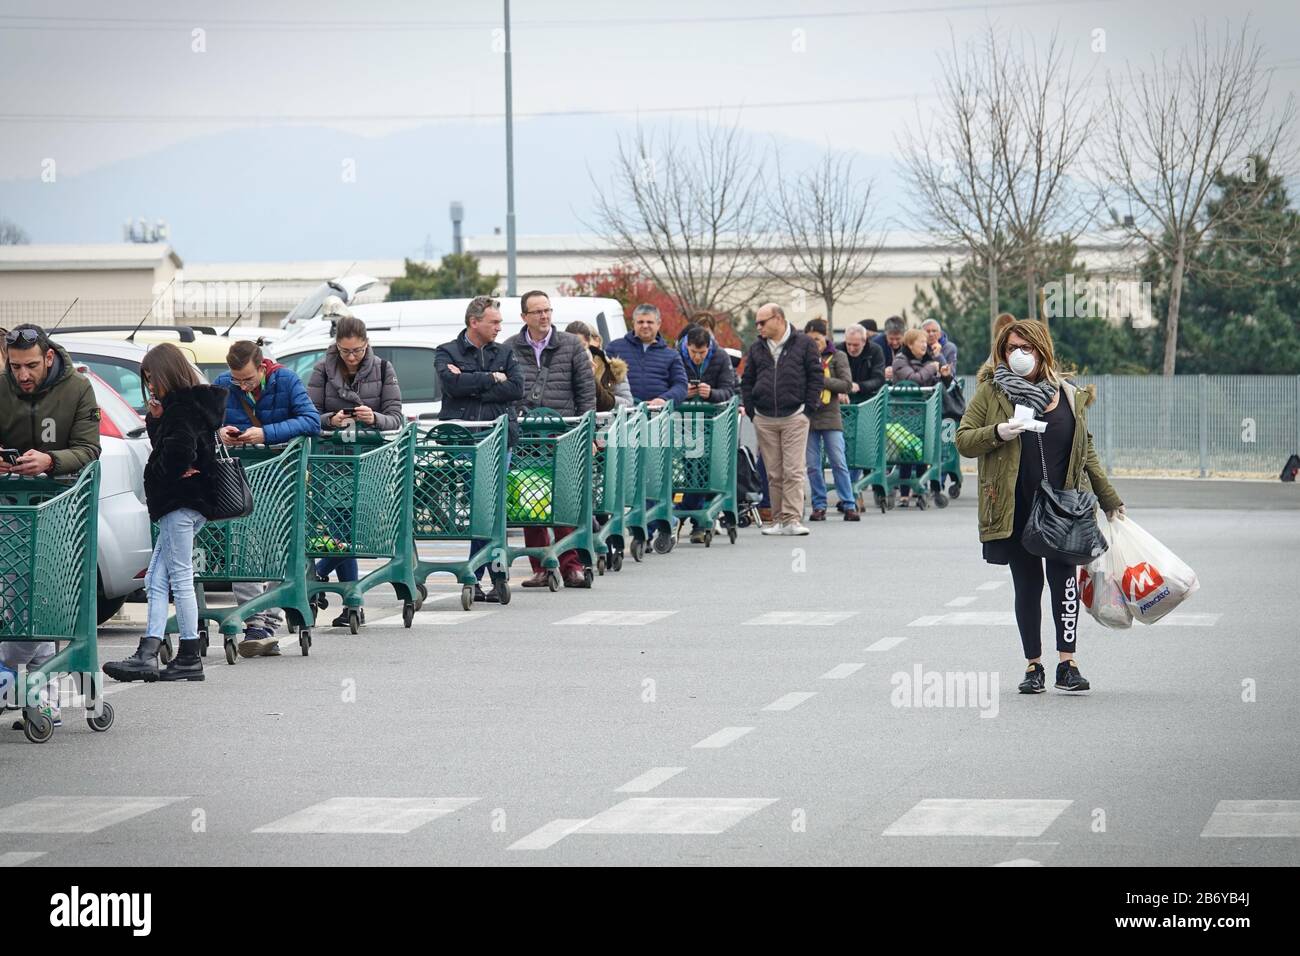 Effets de la pandémie de coronavirus : longue file d'attente pour entrer dans le supermarché pour faire des courses d'épicerie. Milan, Italie - Mars 2020 Banque D'Images